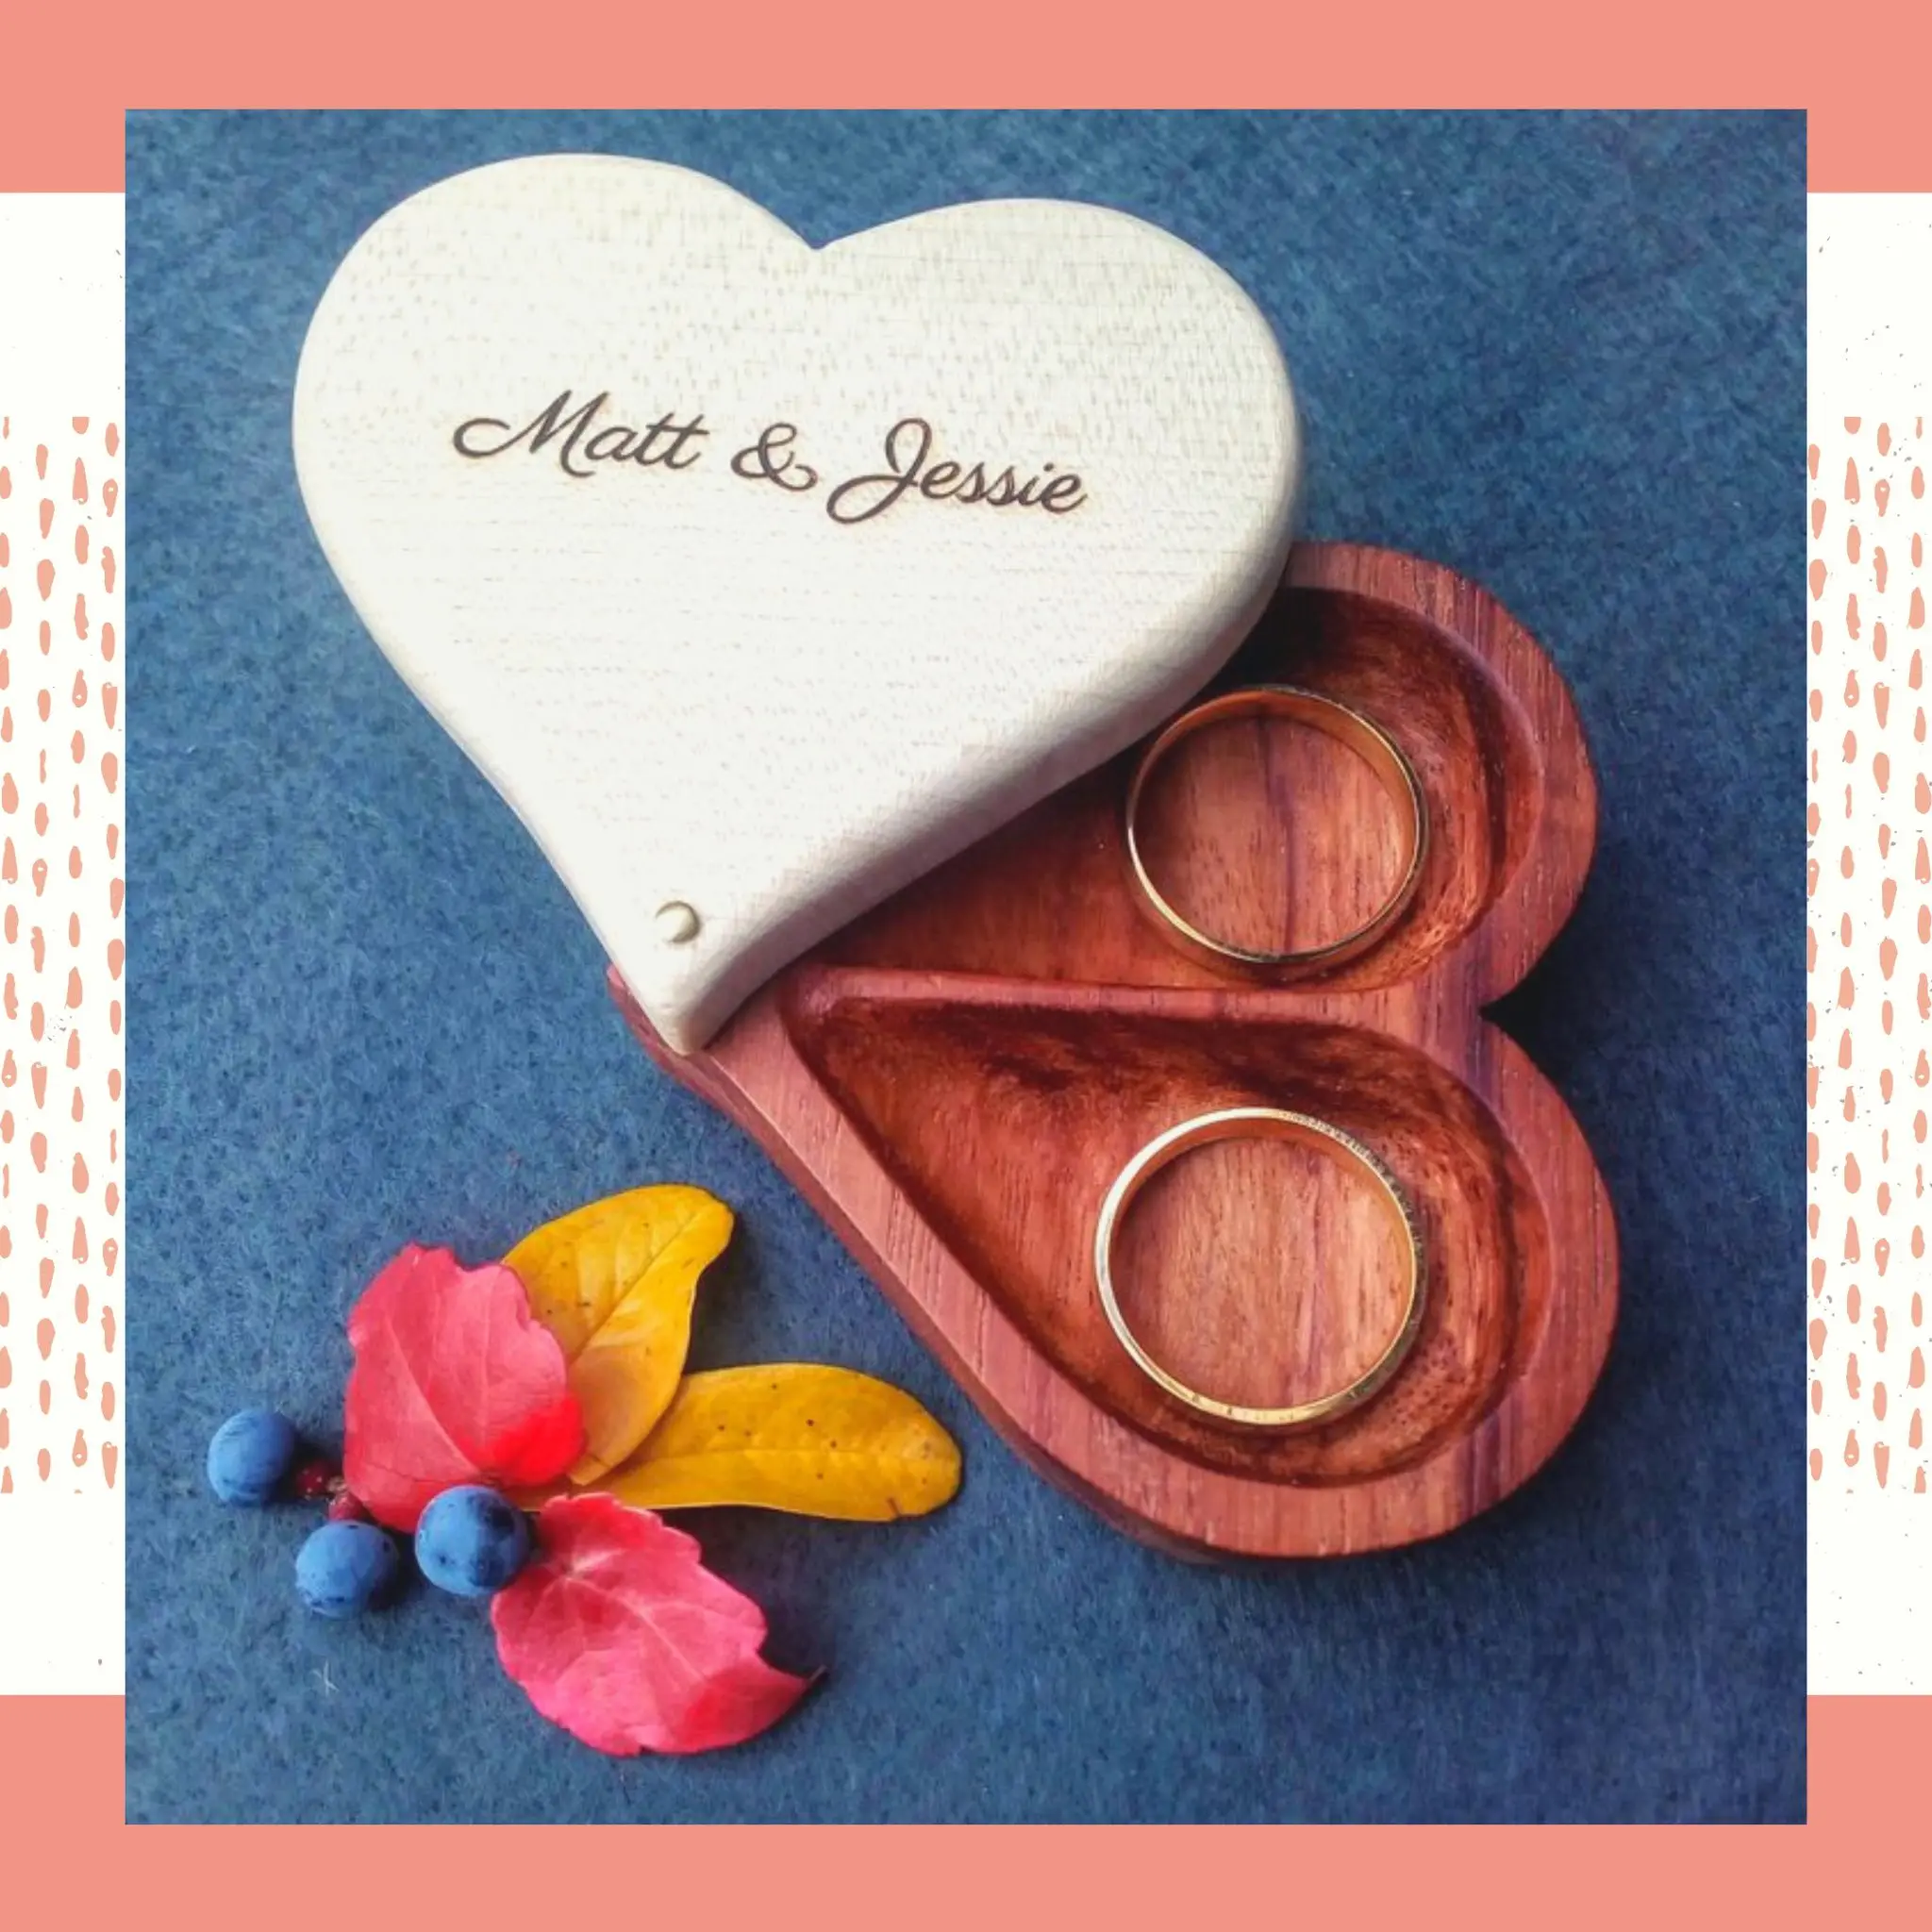 Porta aliança feito de caixinha de madeira personalizada em formato de coração